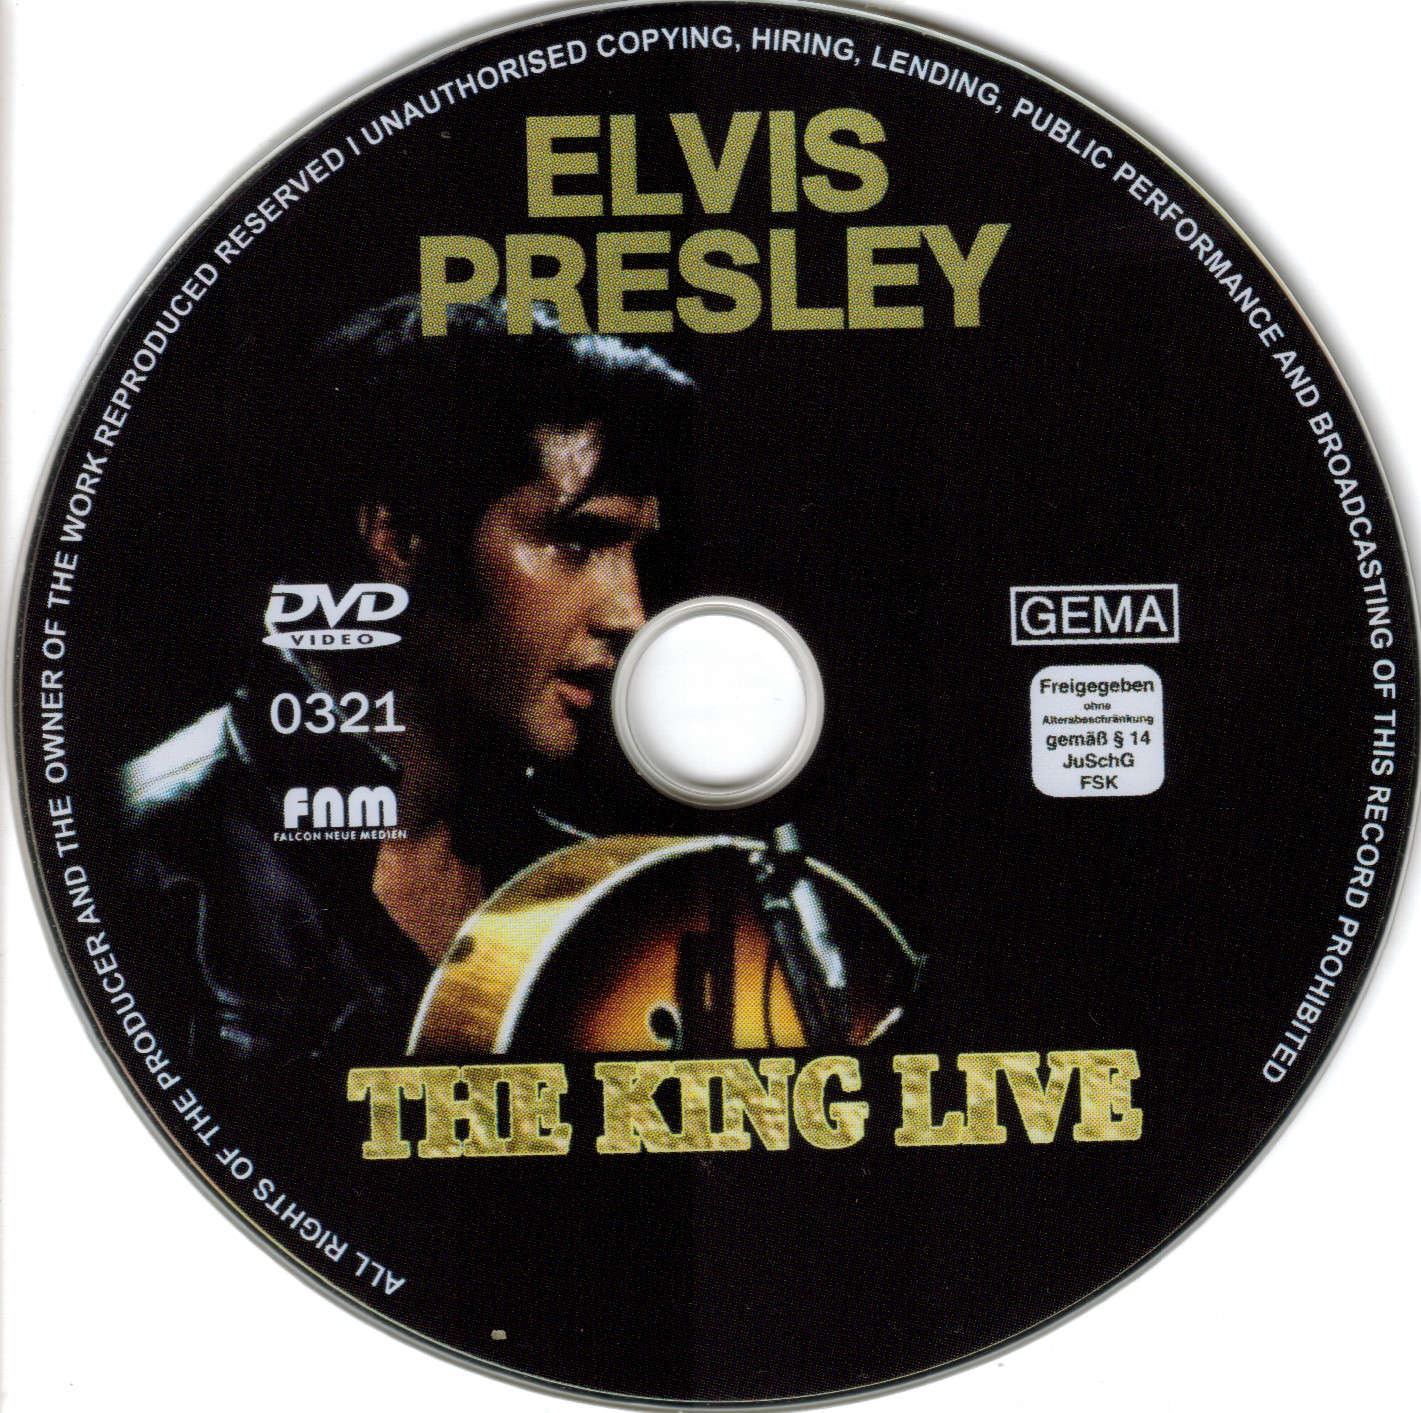 Elvis Presley The king live